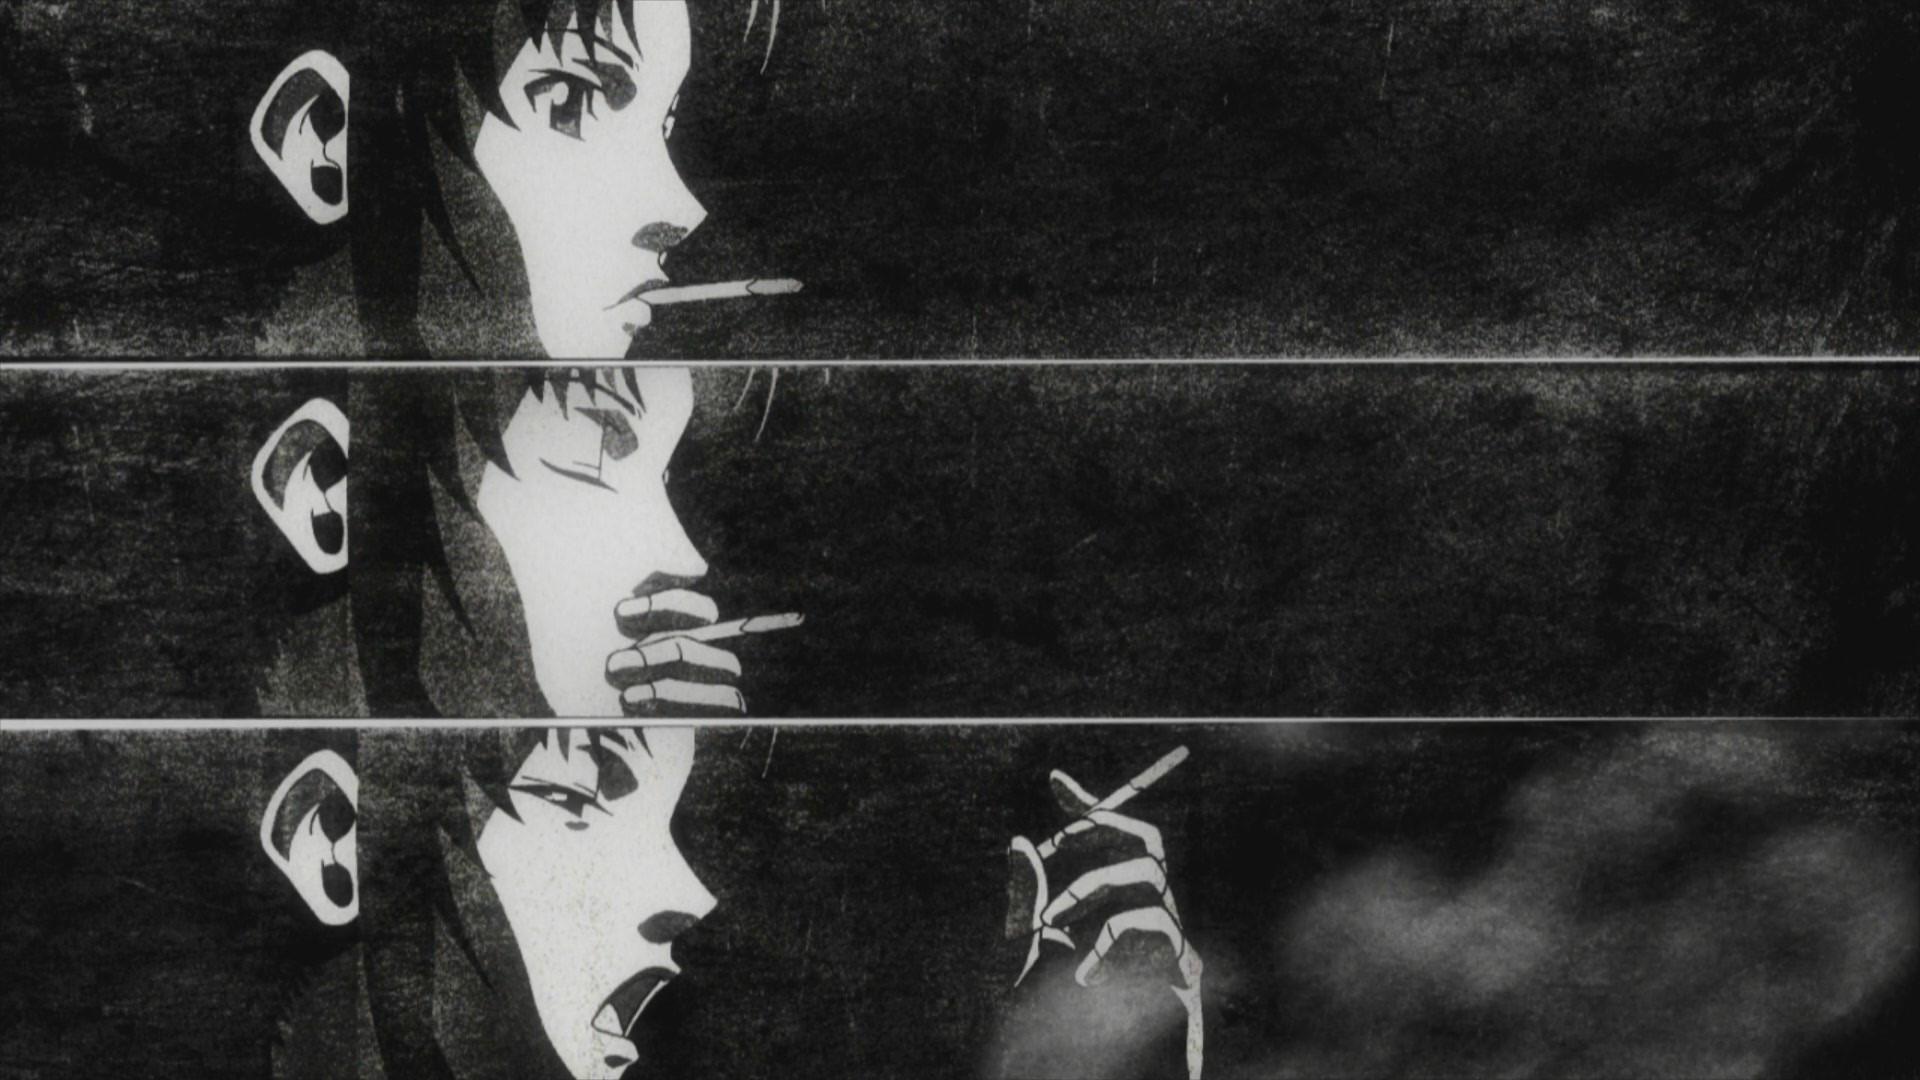 black and white aesthetic desktop anime wallpapers on aesthetic anime laptop black and white wallpapers